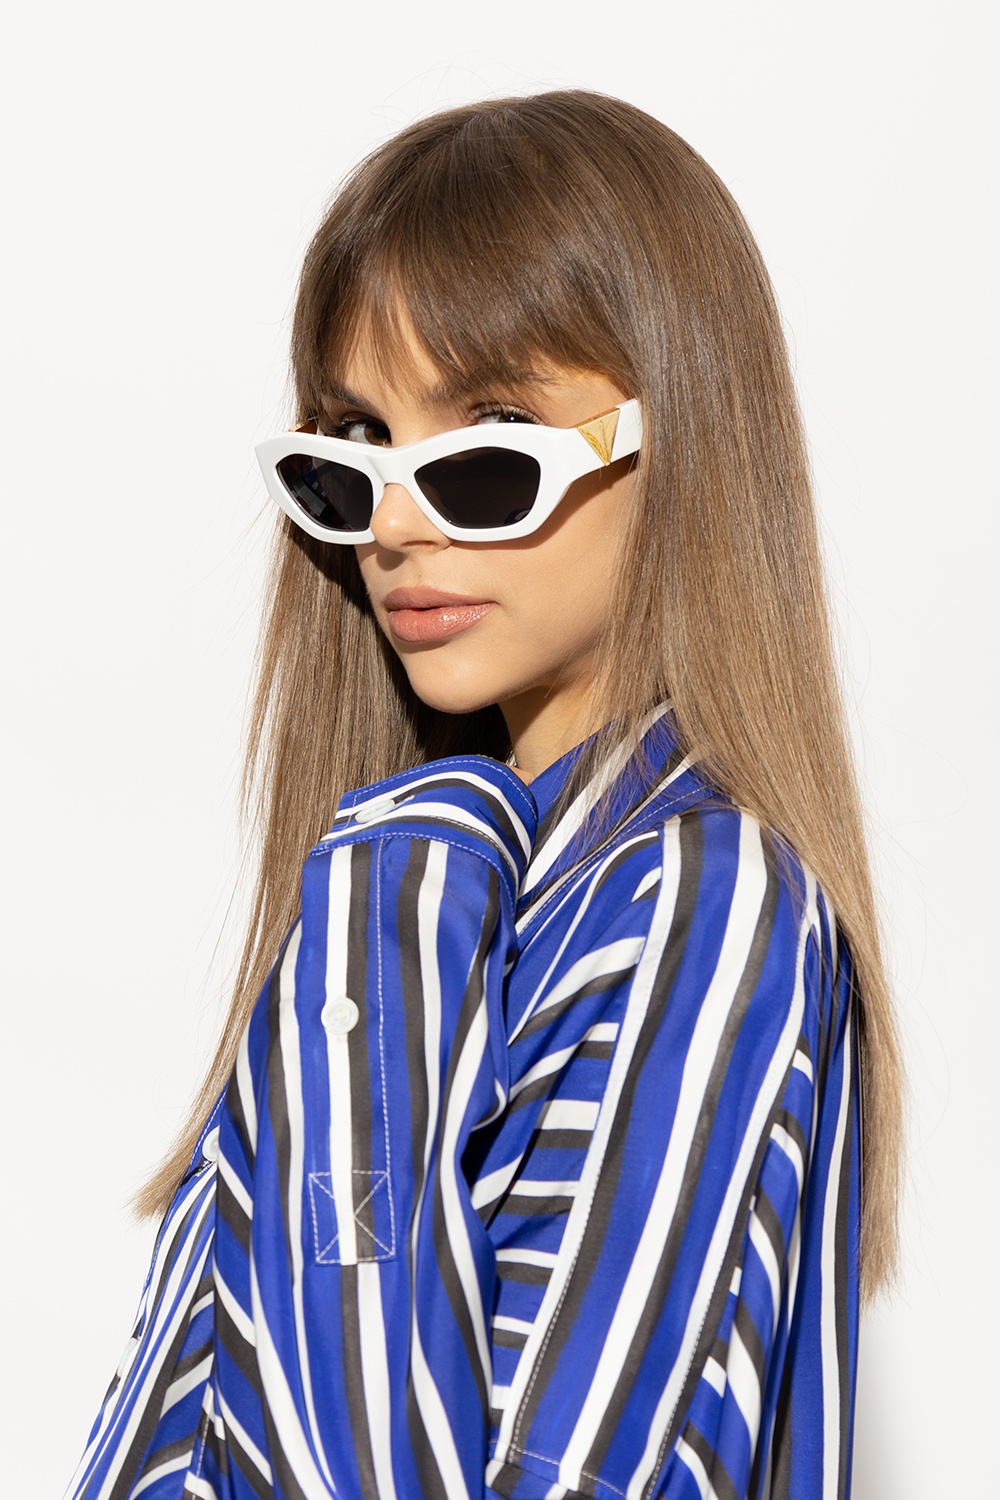 Bottega Veneta ‘Angle’ sunglasses